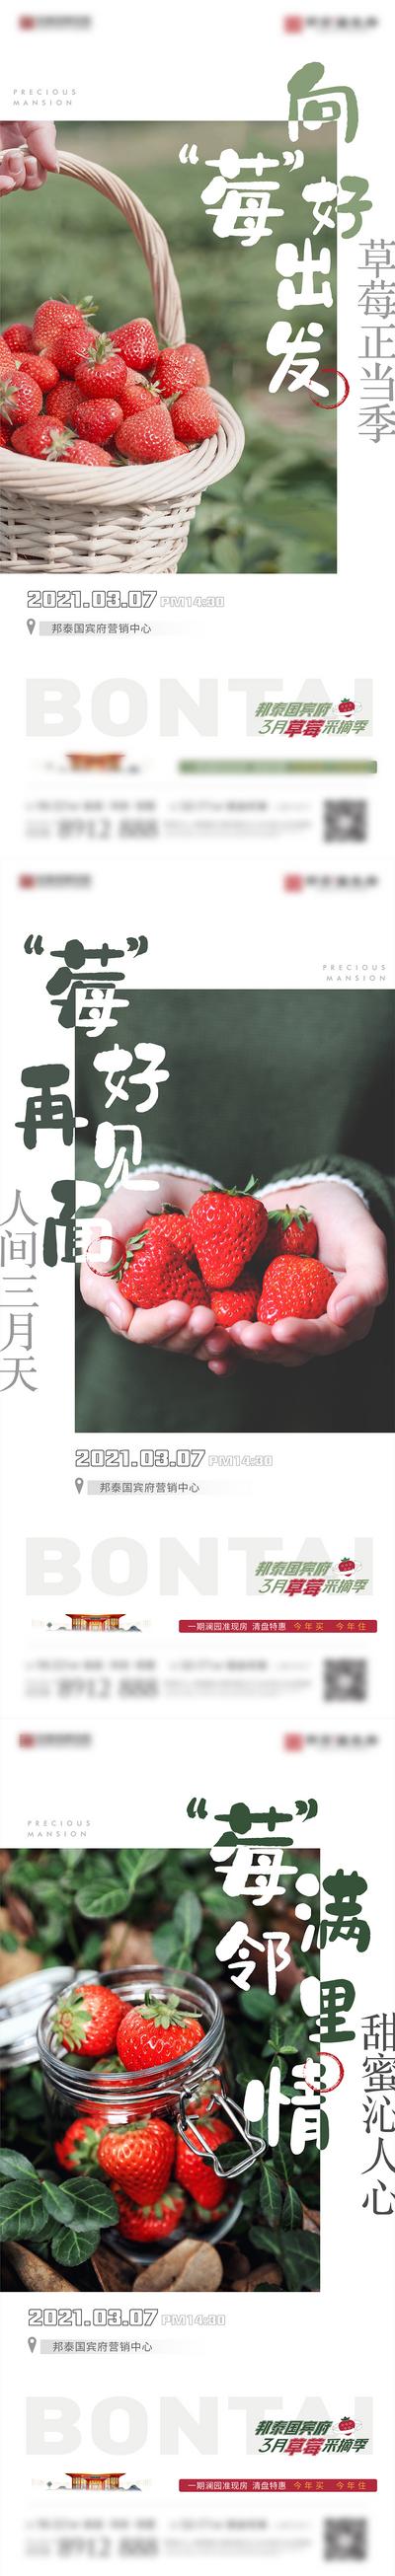 南门网 广告 海报 地产 采摘 草莓 水果 系列